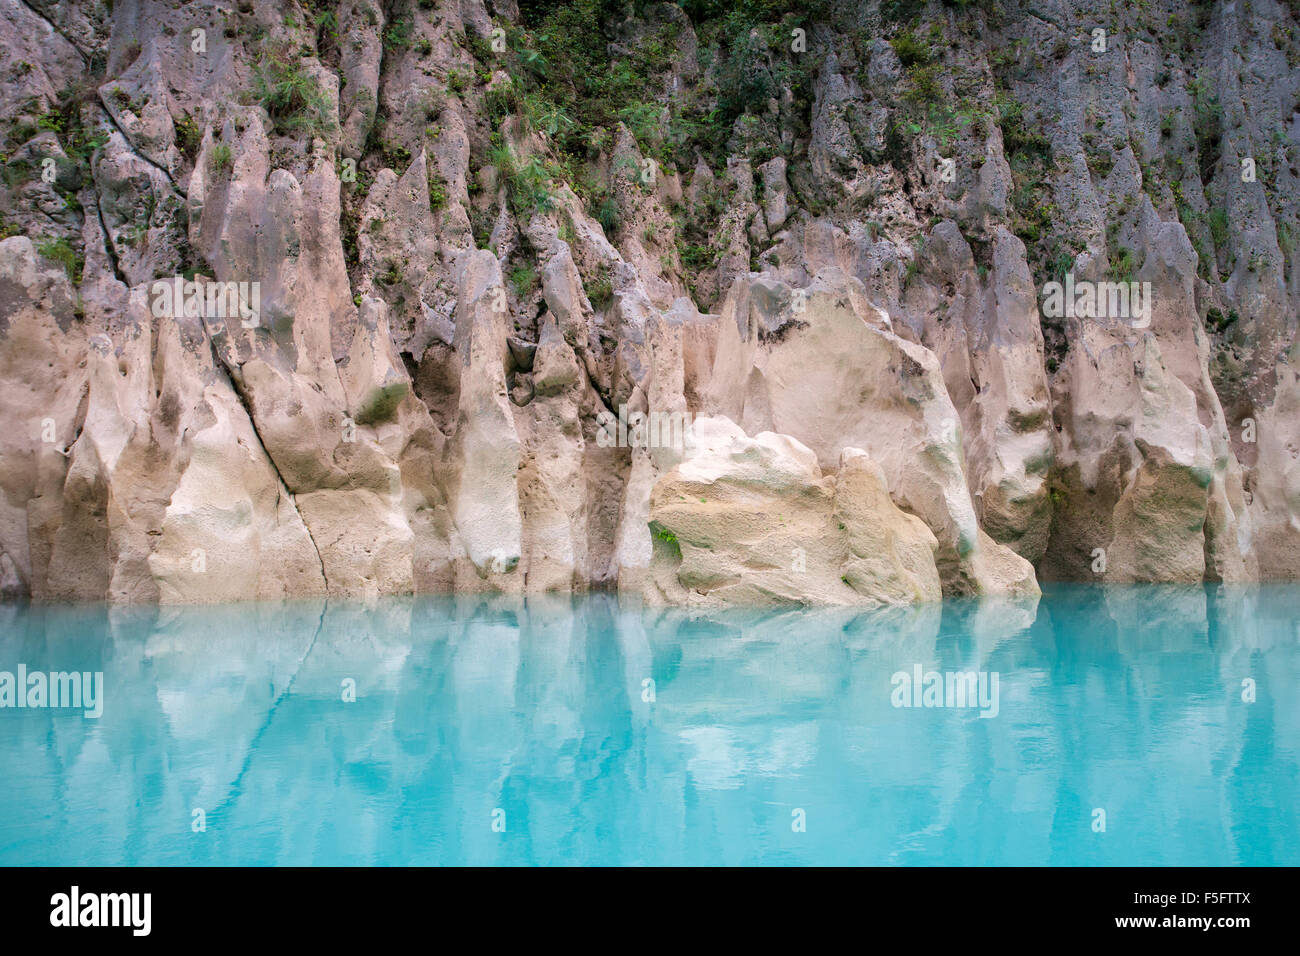 La couleur turquoise de la rivière Tampaon contraste avec des formations rocheuses dans le près de chutes d'Huasteca Potosina Tamul, San Luis Pot Banque D'Images